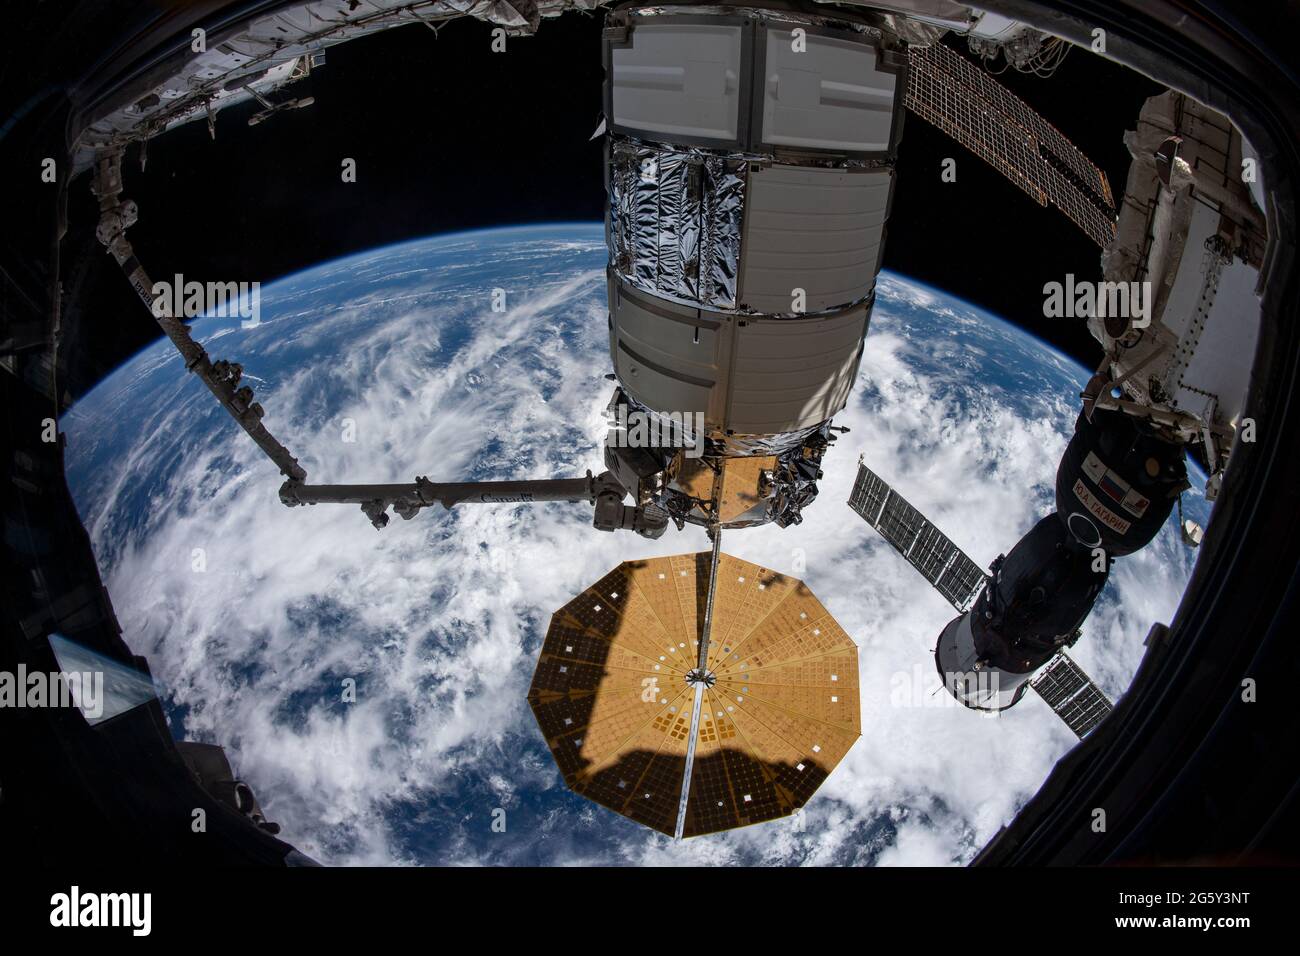 La navicella spaziale Northrop Grumman Cygnus con i distinti pannelli solari a forma di cembalo è attaccata dal CanadaArm2 mentre è fissata al modulo di unità della Stazione spaziale Internazionale 27 giugno 2020 in orbita terrestre. Foto Stock